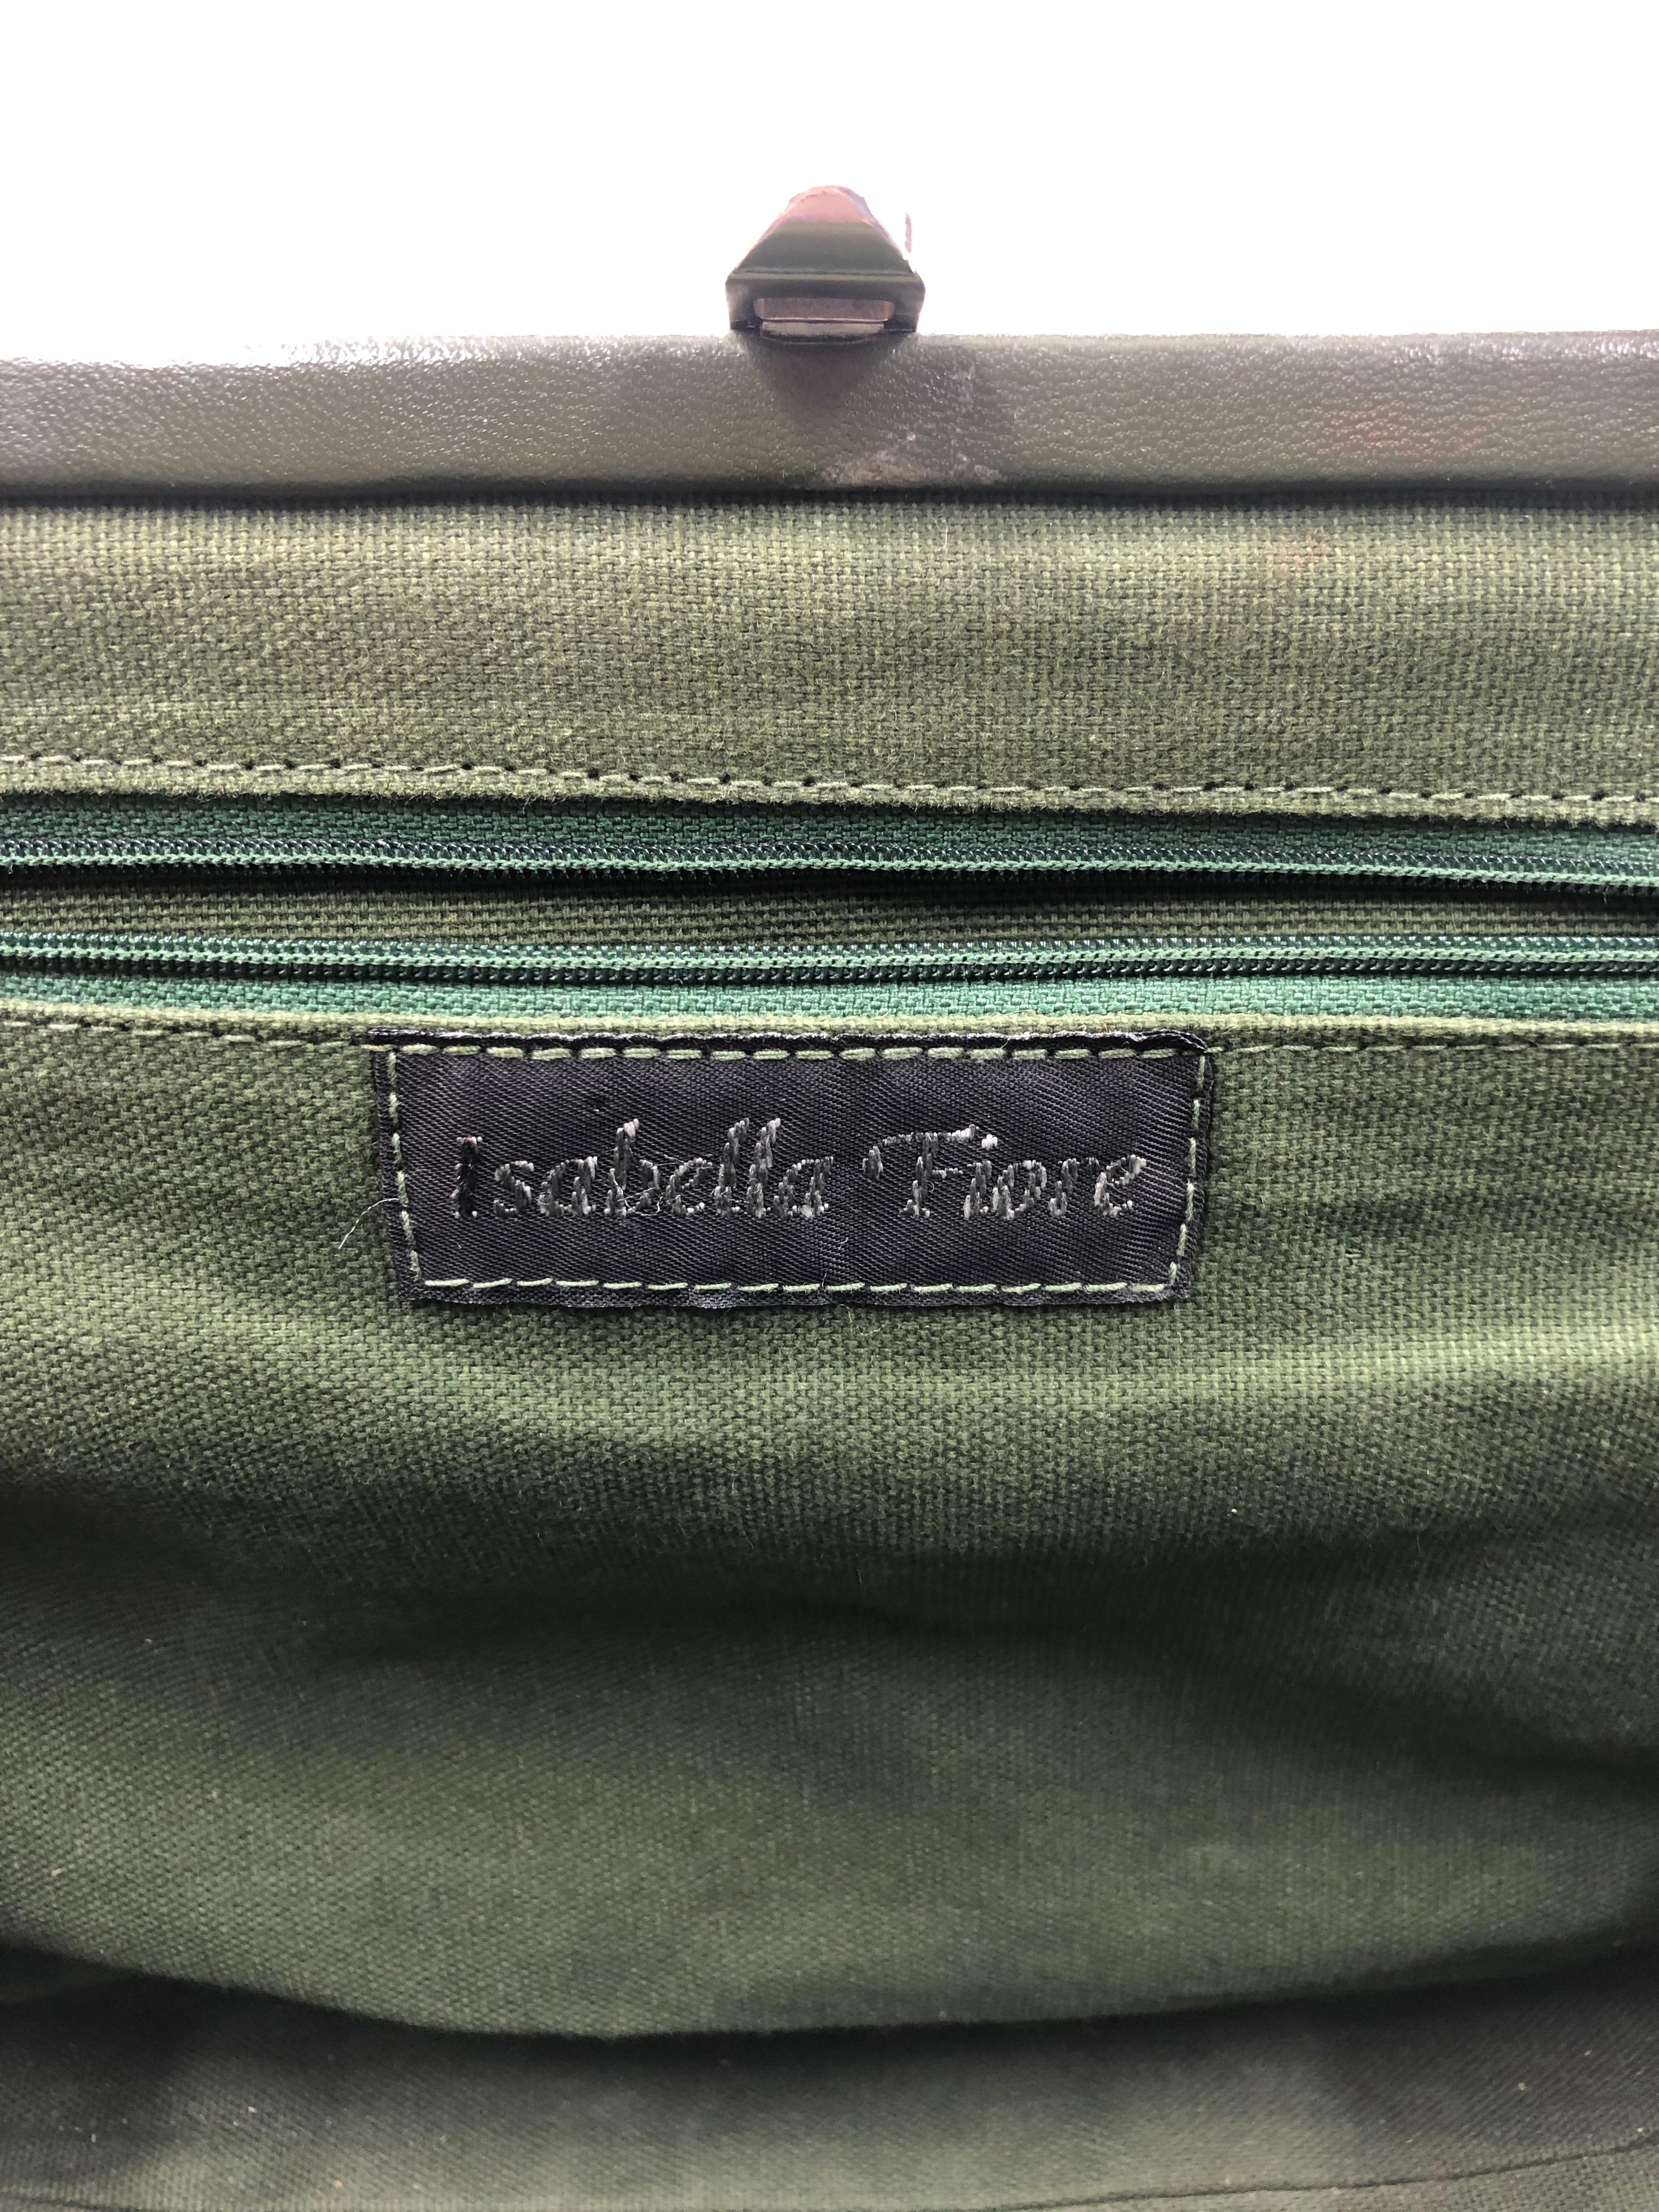 isabella fiore handbags